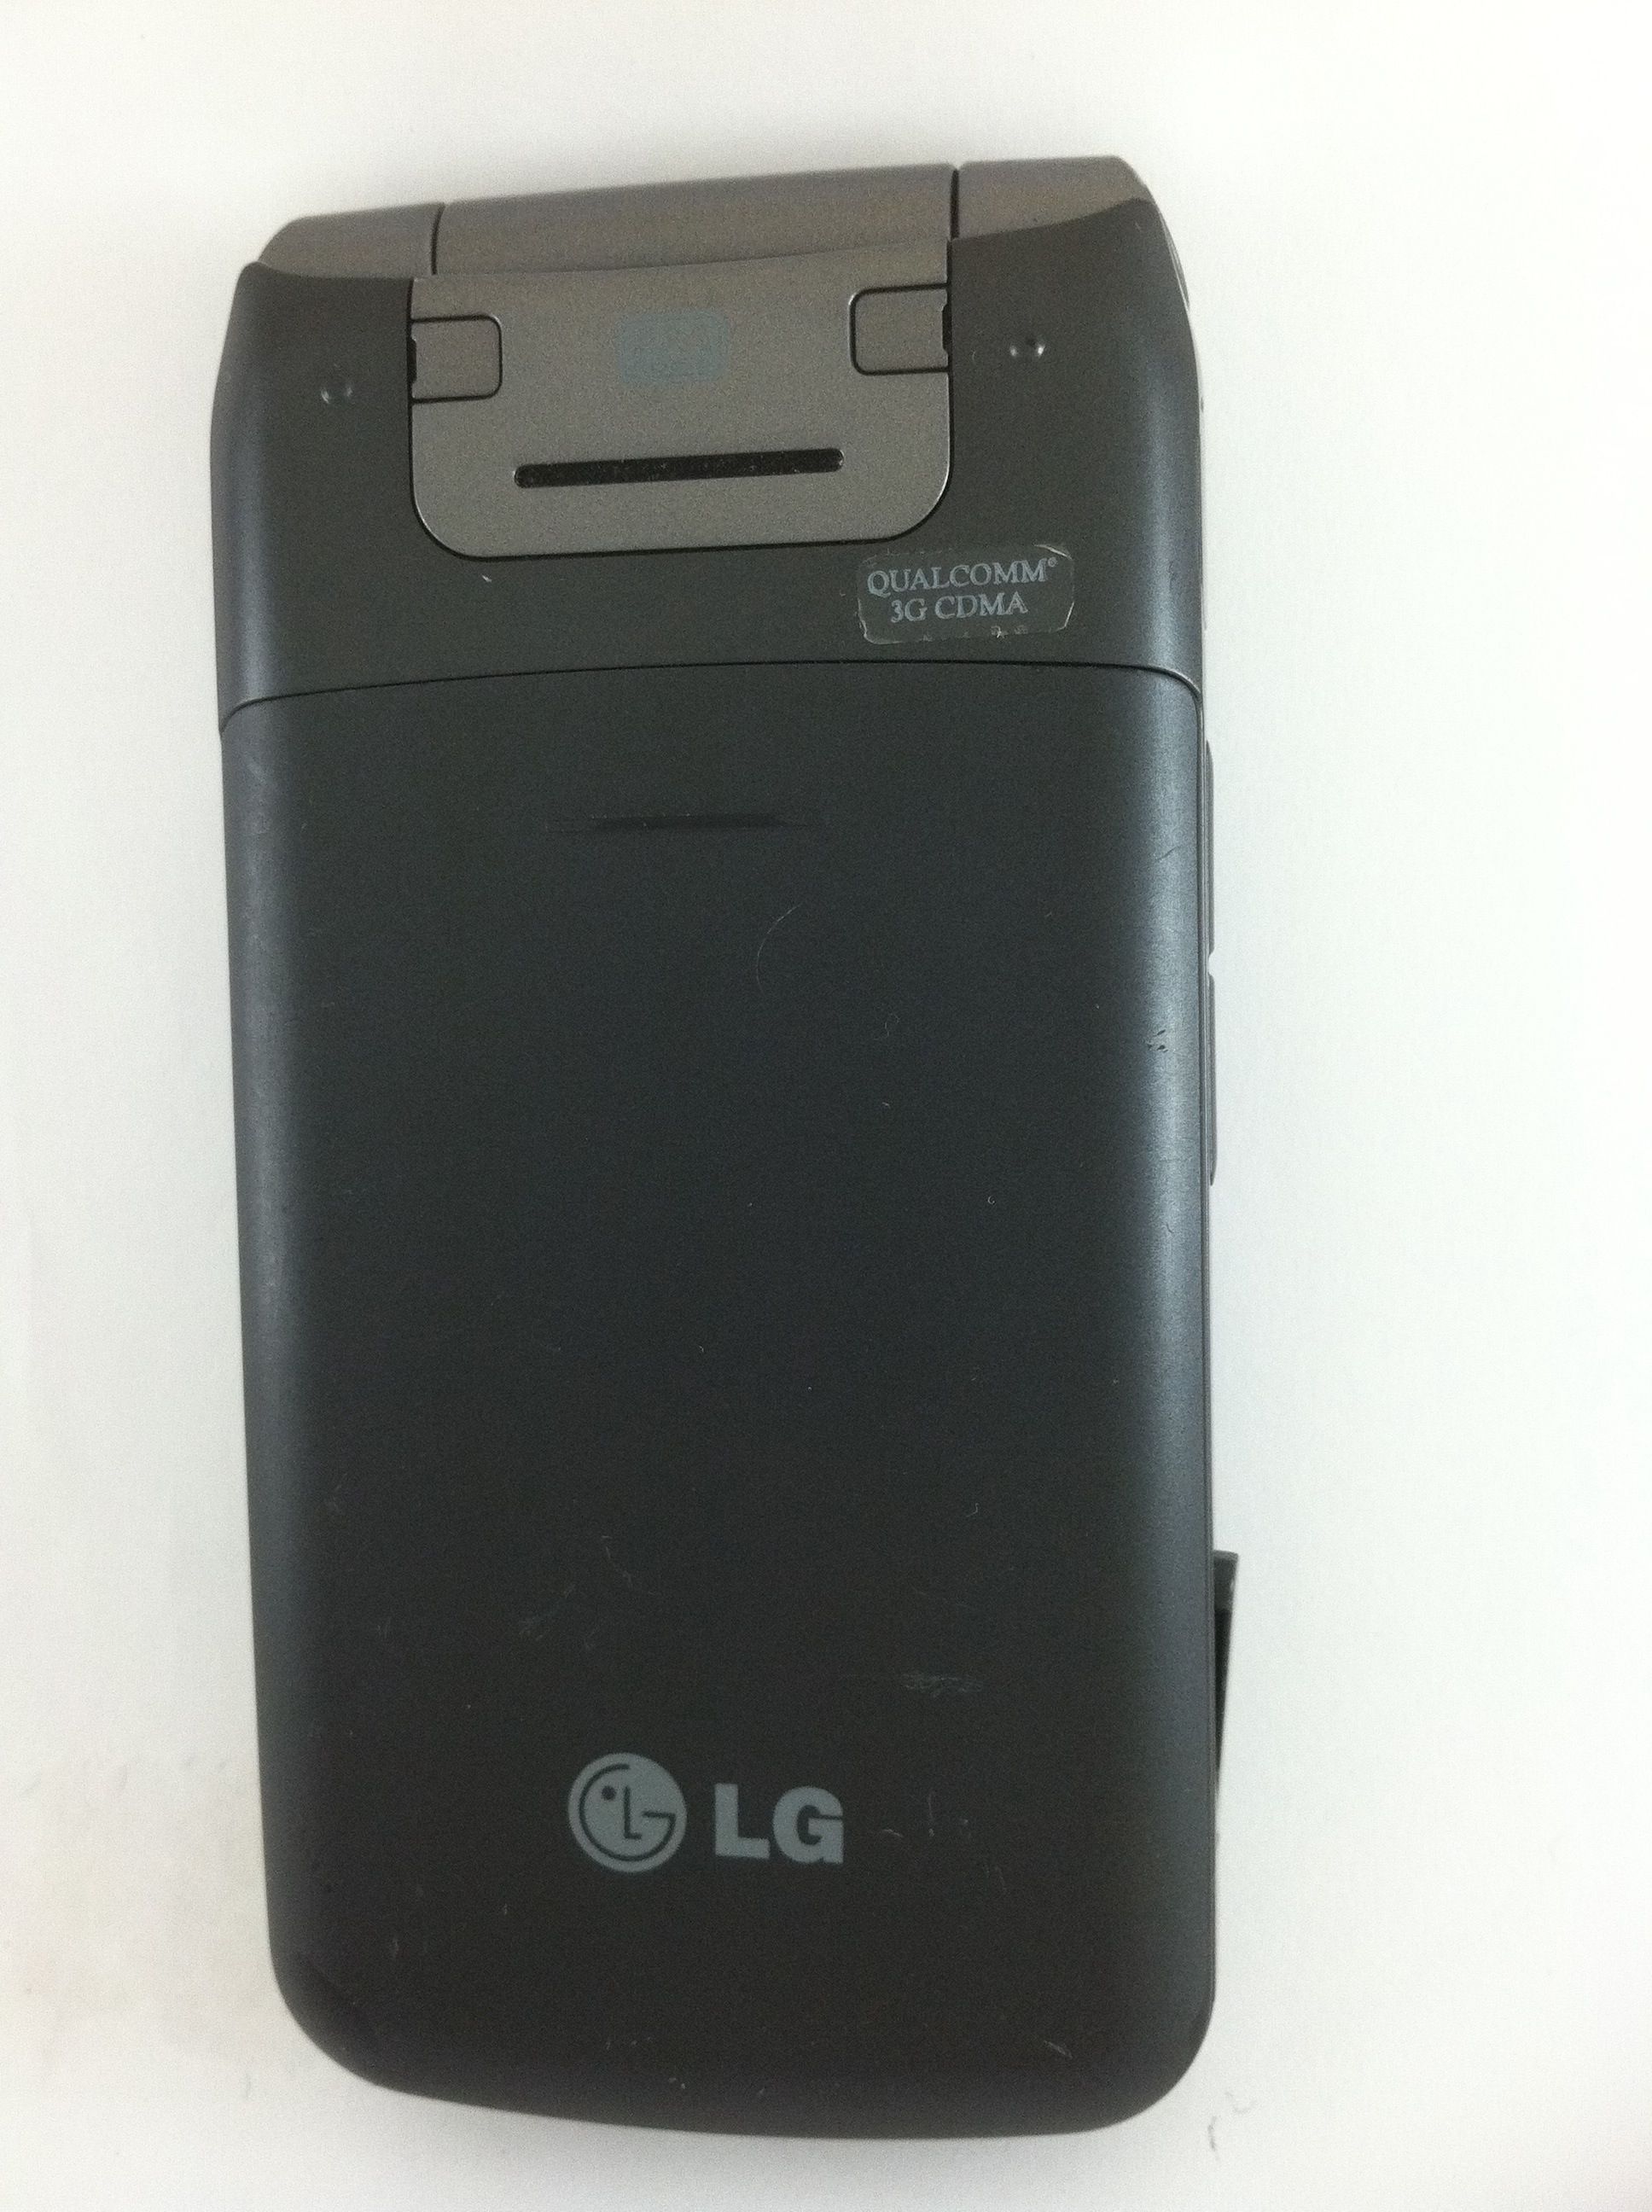 LG Wine II UN430 US Cellular 3G Flip w FM Radio 2MP Camera